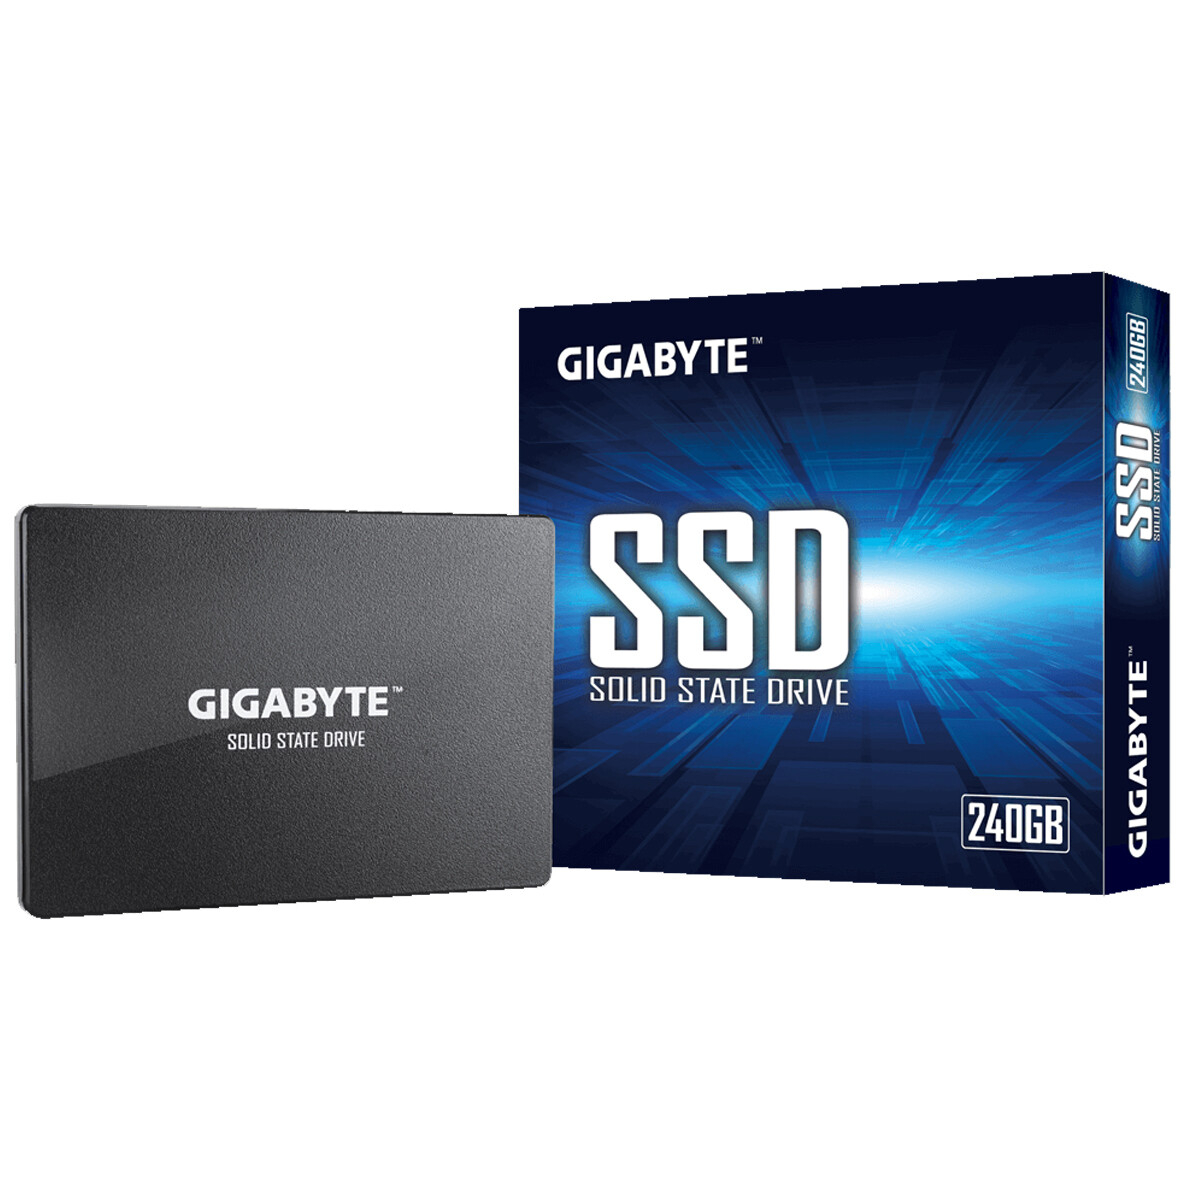 DISCO DURO SOLIDO SSD DE 240GB GIGABYTE